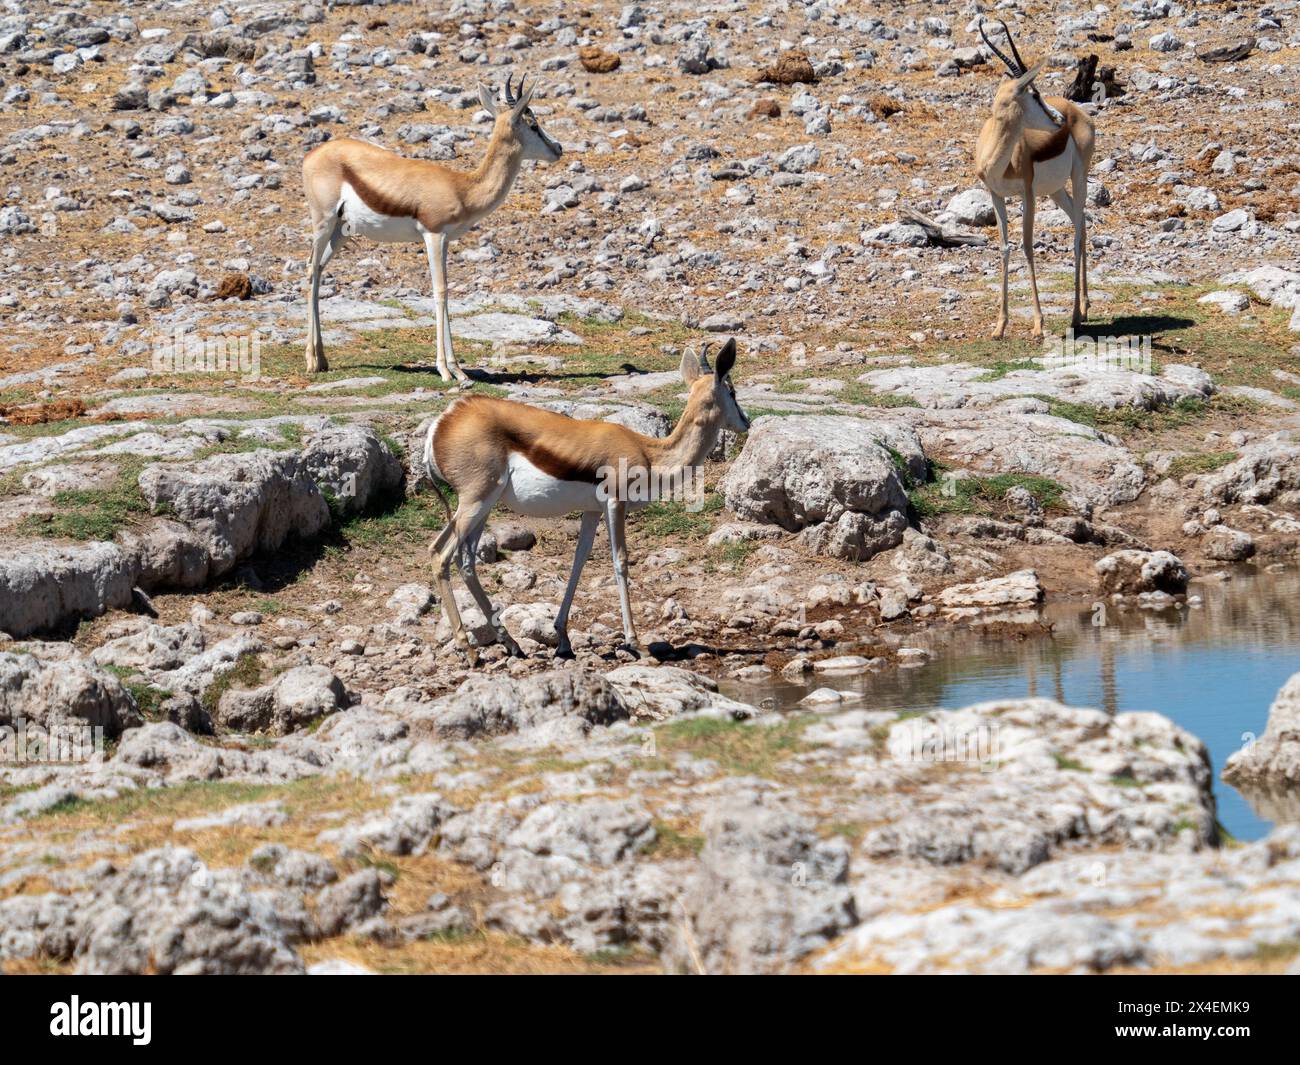 Impalas in Etosha National Park, Namibia Stock Photo